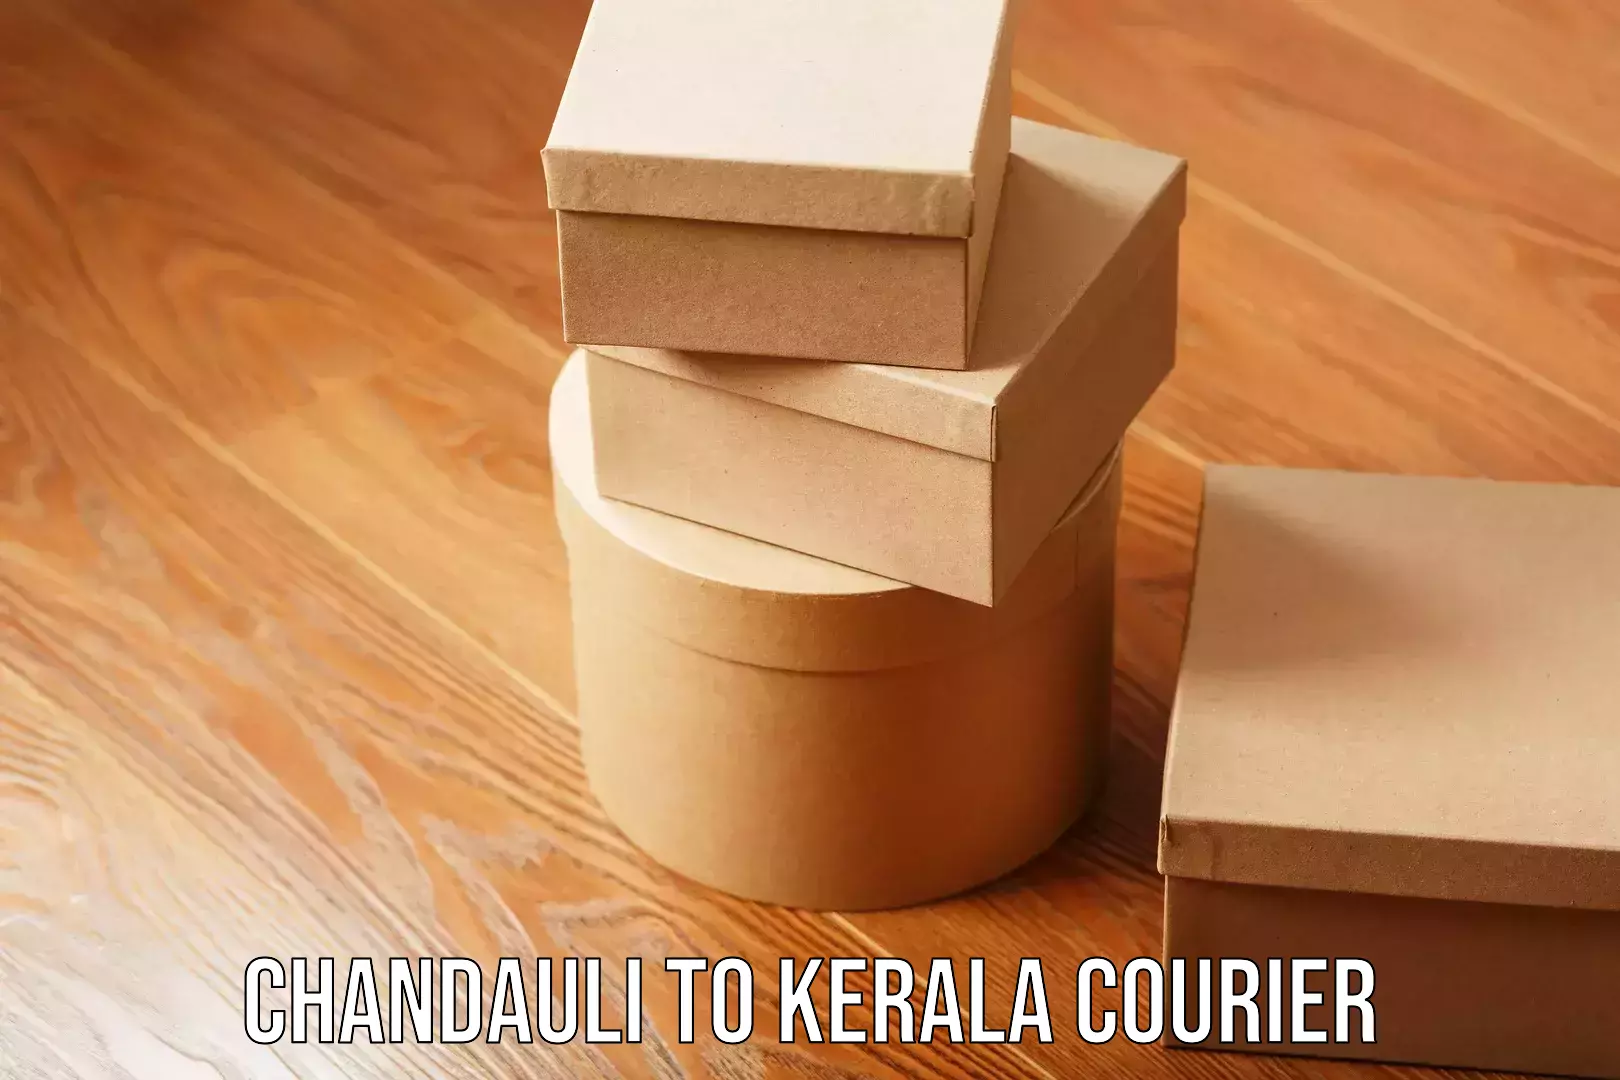 Multi-modal transport Chandauli to Kerala